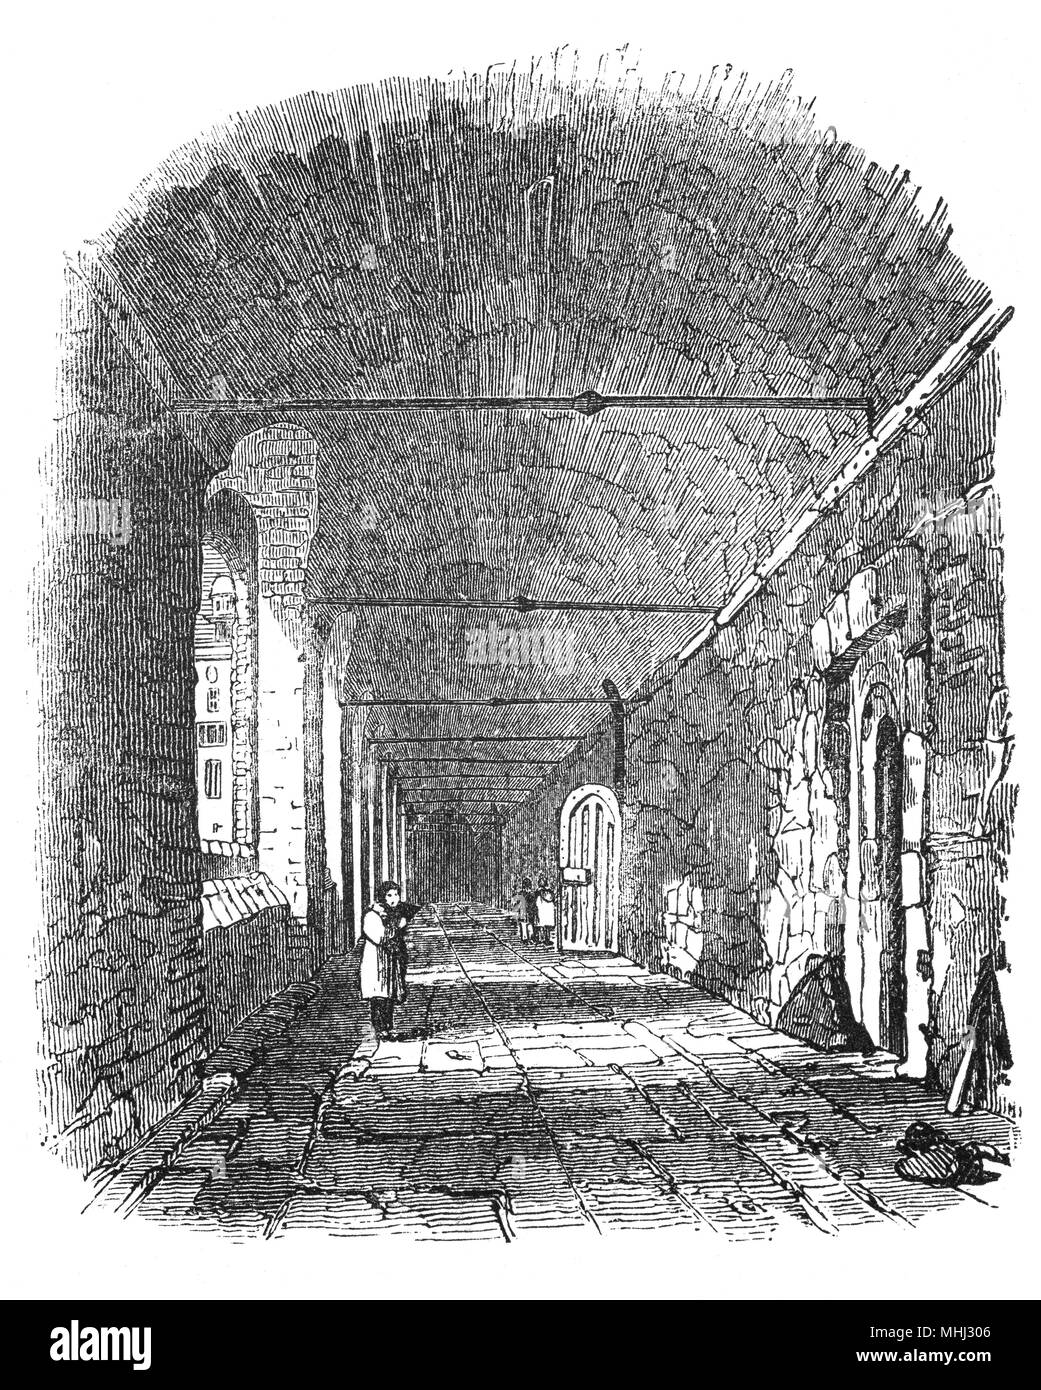 Le cloître en chartreuse, un complexe de bâtiments historiques dans la région de Smithfield, Londres, datant du 14ème siècle. Il a commencé comme un prieuré de l'ordre des Chartreux, fondé en 1371 et dissous en 1537. Des fragments importants subsistent de cette période monastique, mais le site a été en grande partie reconstruite après 1545 comme une grande randonnée de 16ème siècle. La Chartreuse a été remaniée et agrandie après 1611, lorsqu'il est devenu un hospice et école, dotée par Thomas Sutton. L'hospice (maison pour messieurs retraités) occupe encore le site aujourd'hui sous le nom de la Chartreuse. Banque D'Images